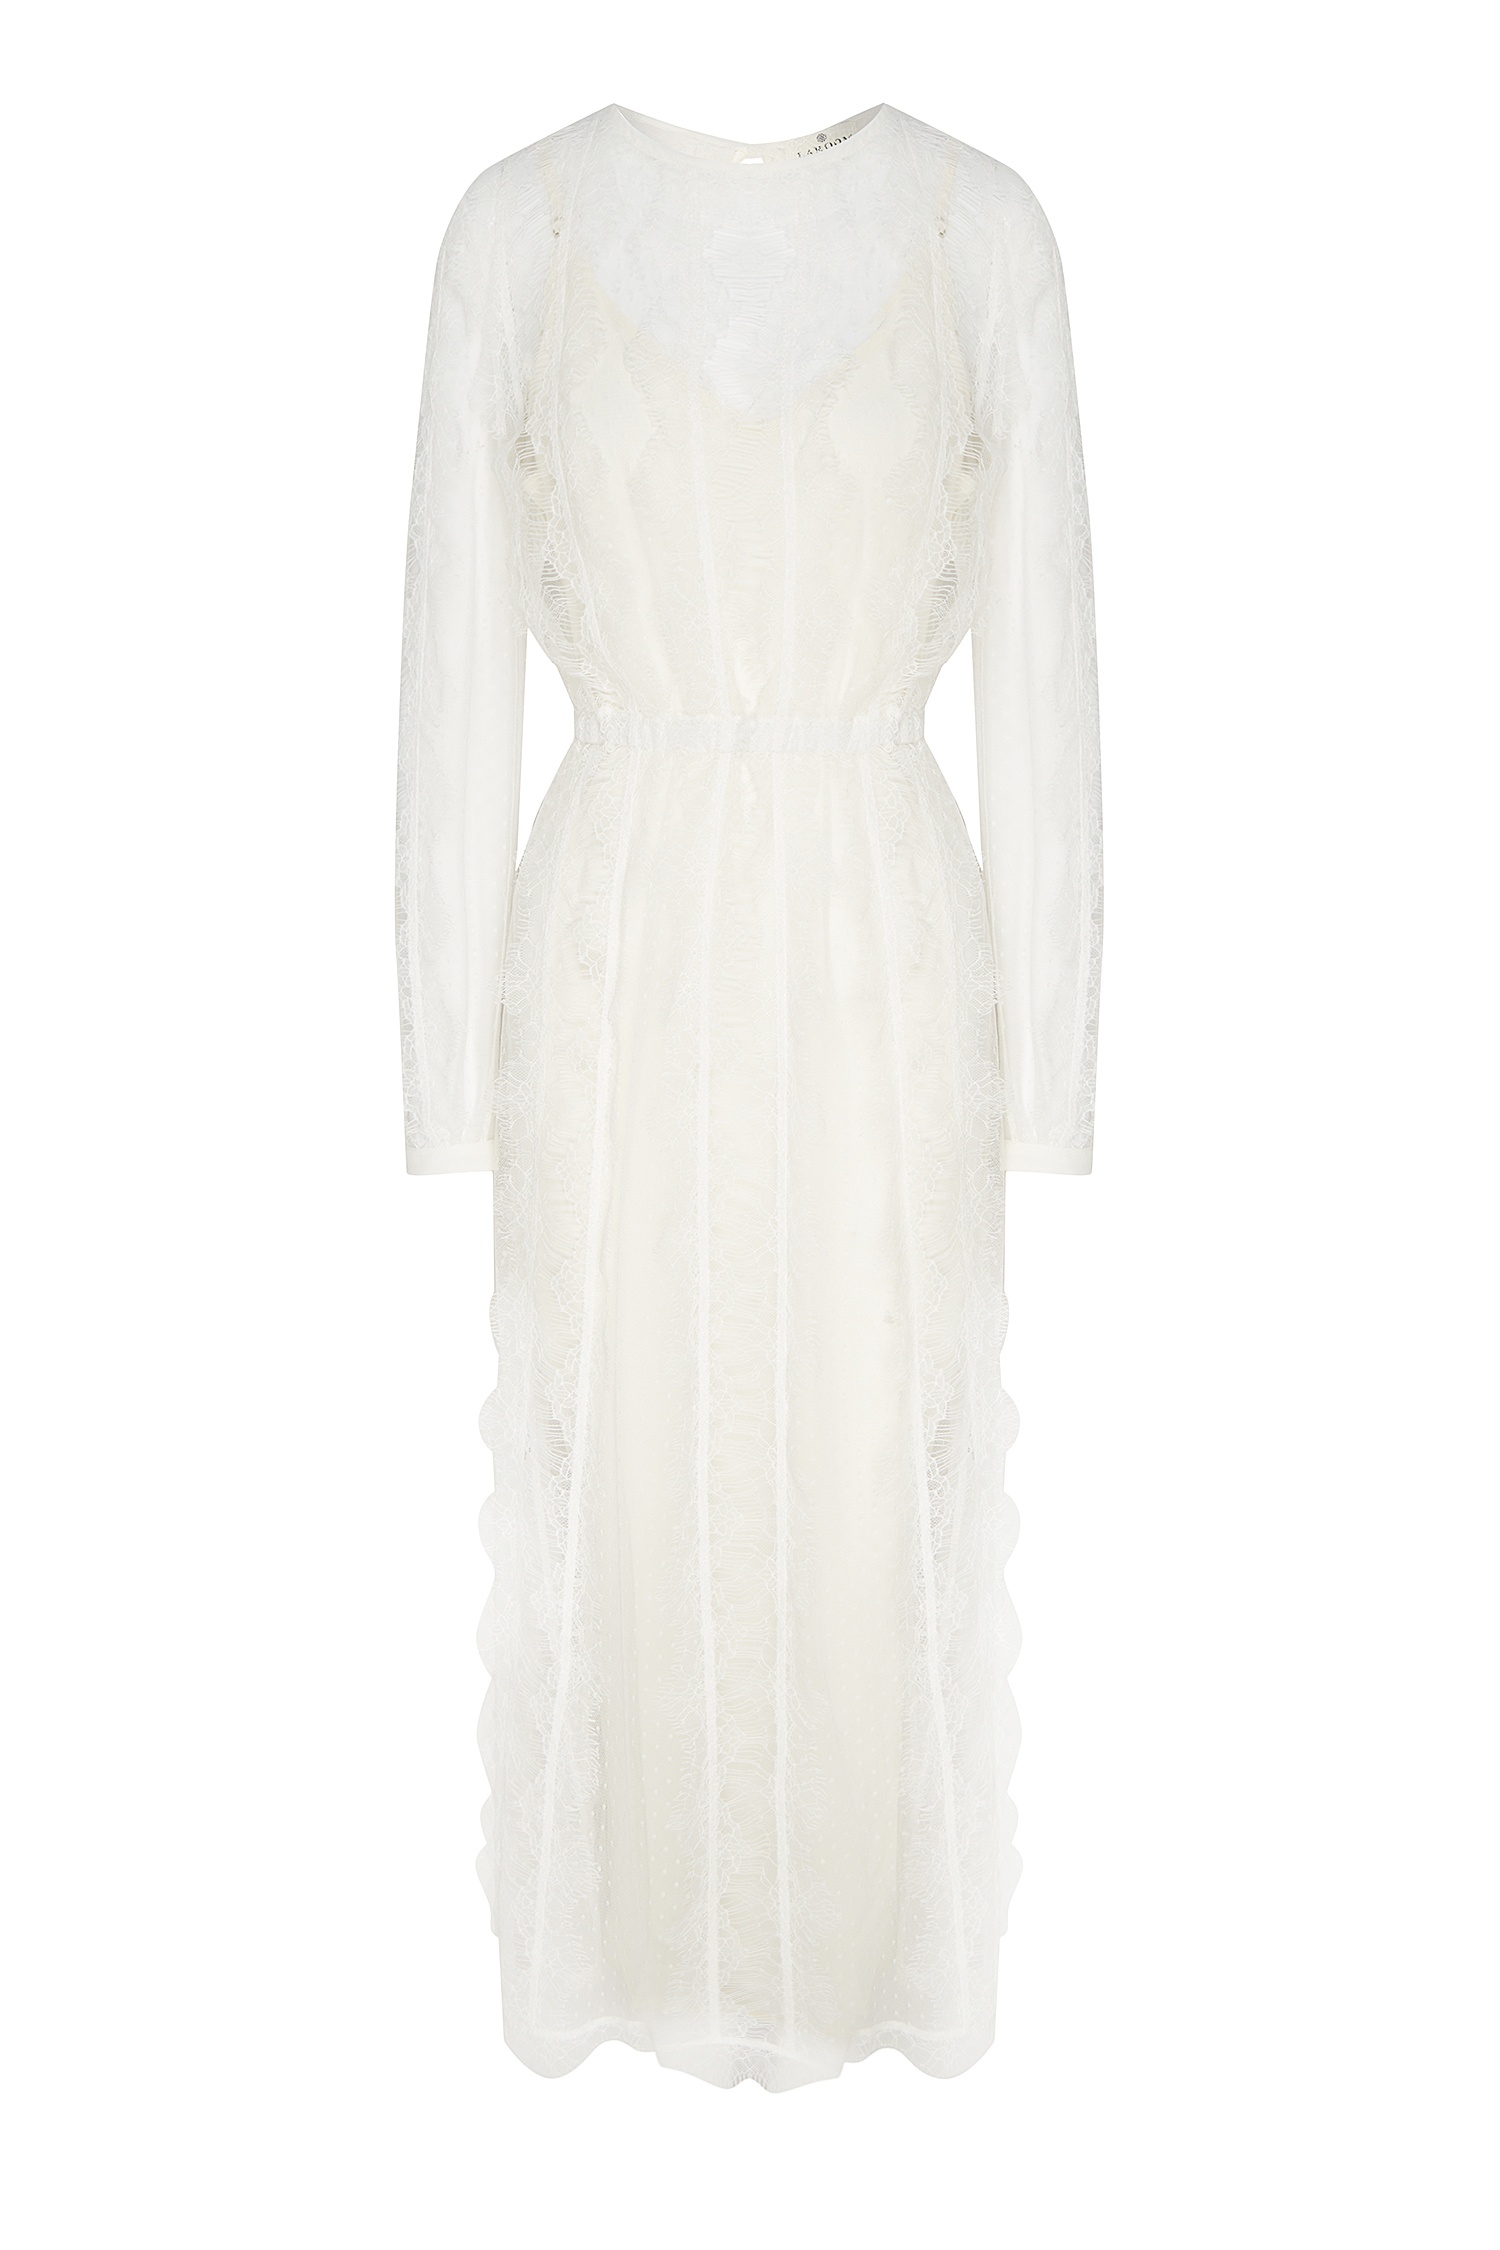 Купить Белое Платье В Интернет Магазине